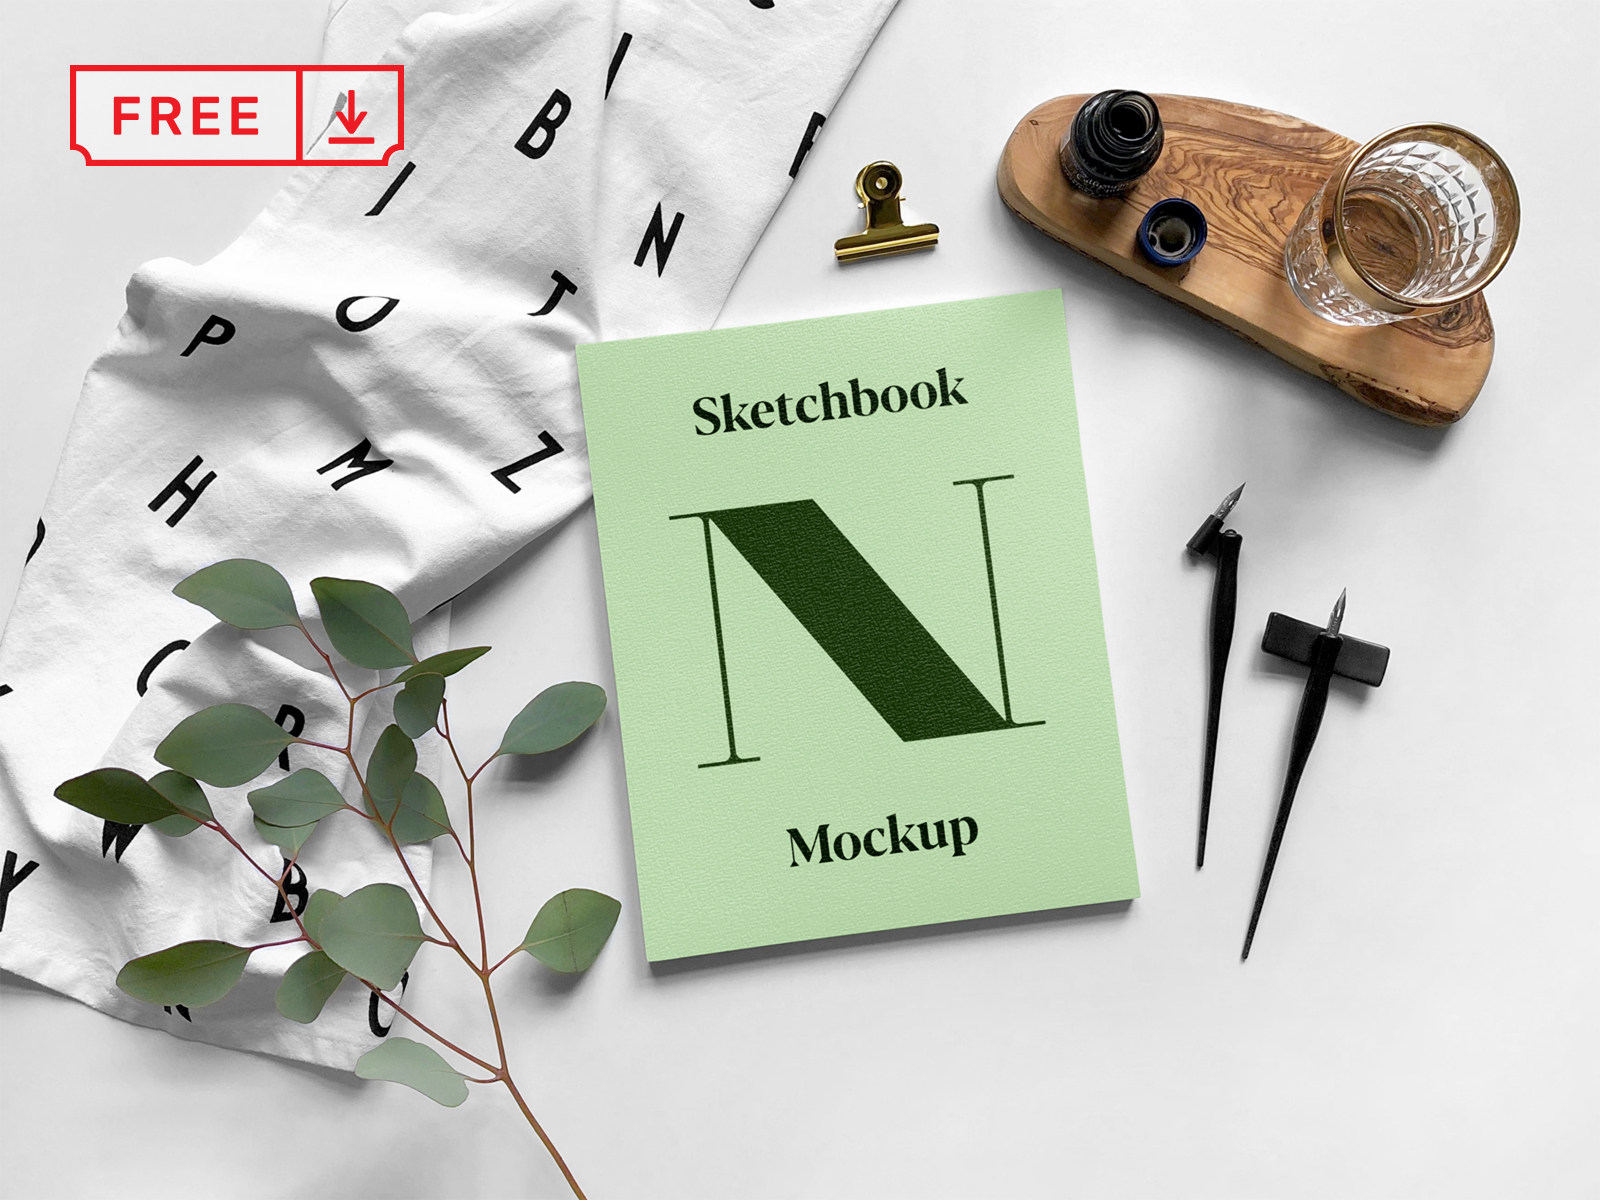 Download Free Sketchbook PSD Mockup by Mr.Mockup™ on Dribbble